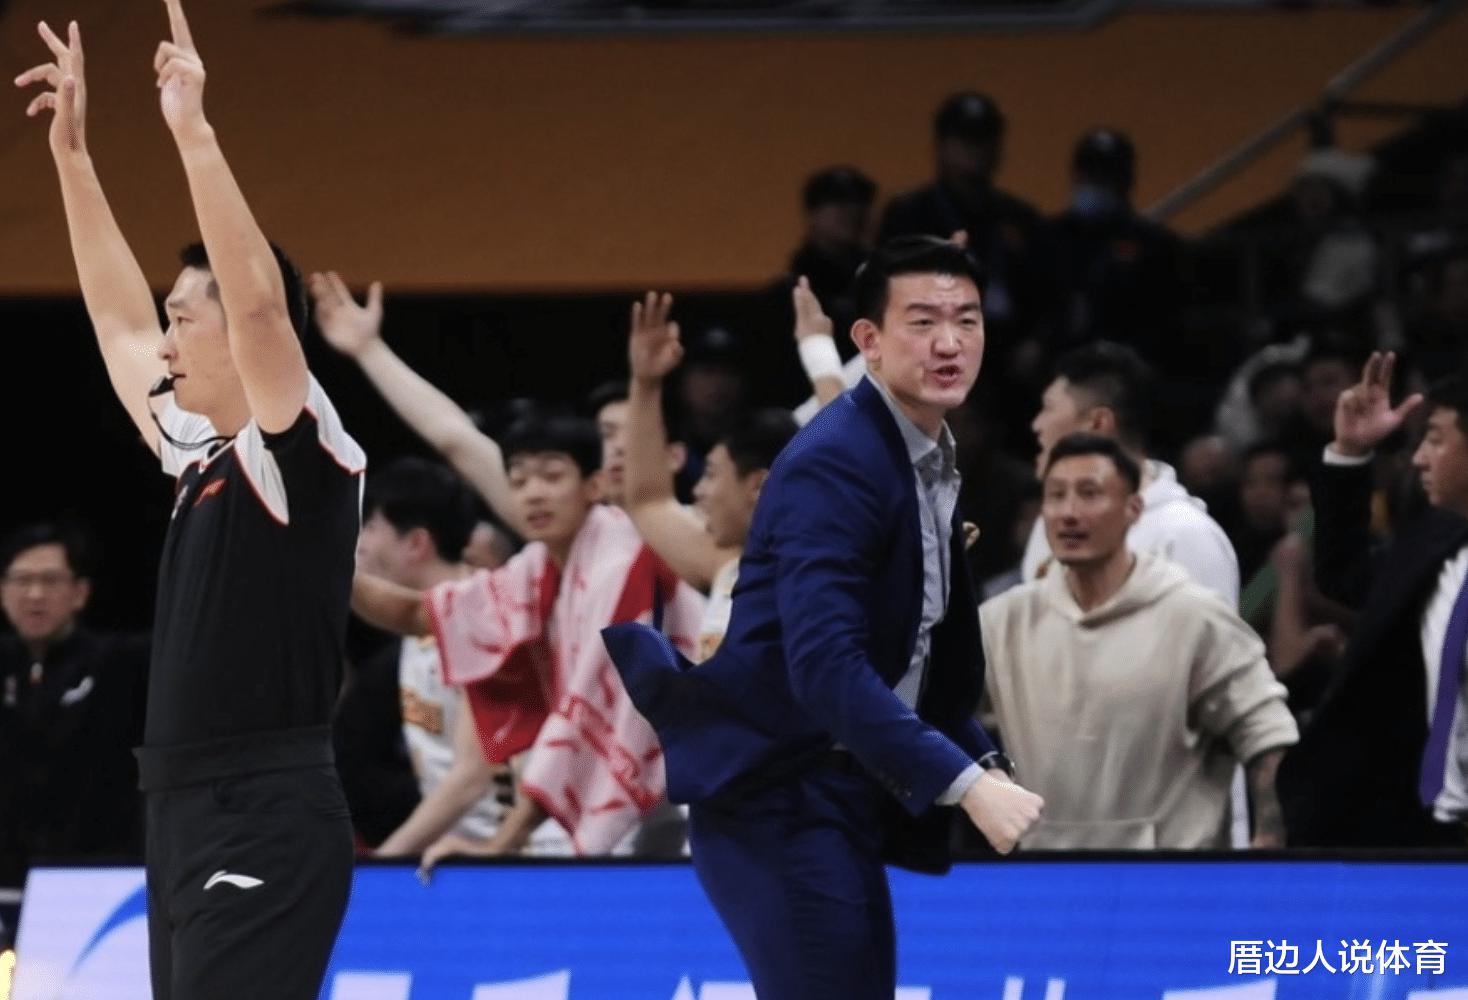 中国篮球闹剧 土帅外教场边争吵 王博赛后道歉对方不领情公开投诉